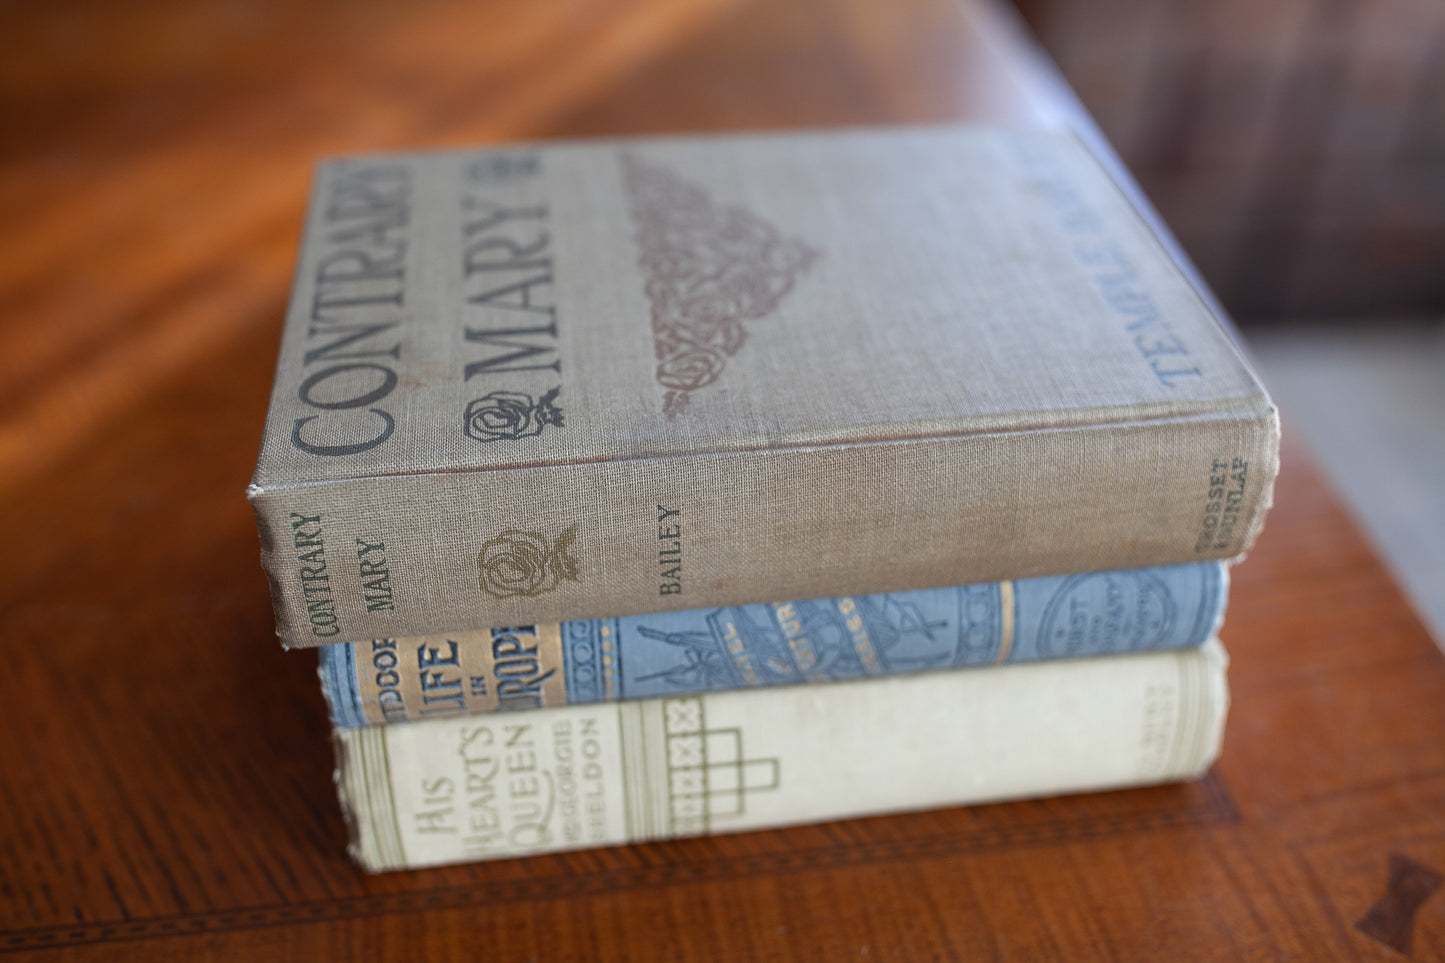 Antique Stack of books - 3 Books -Antique Book